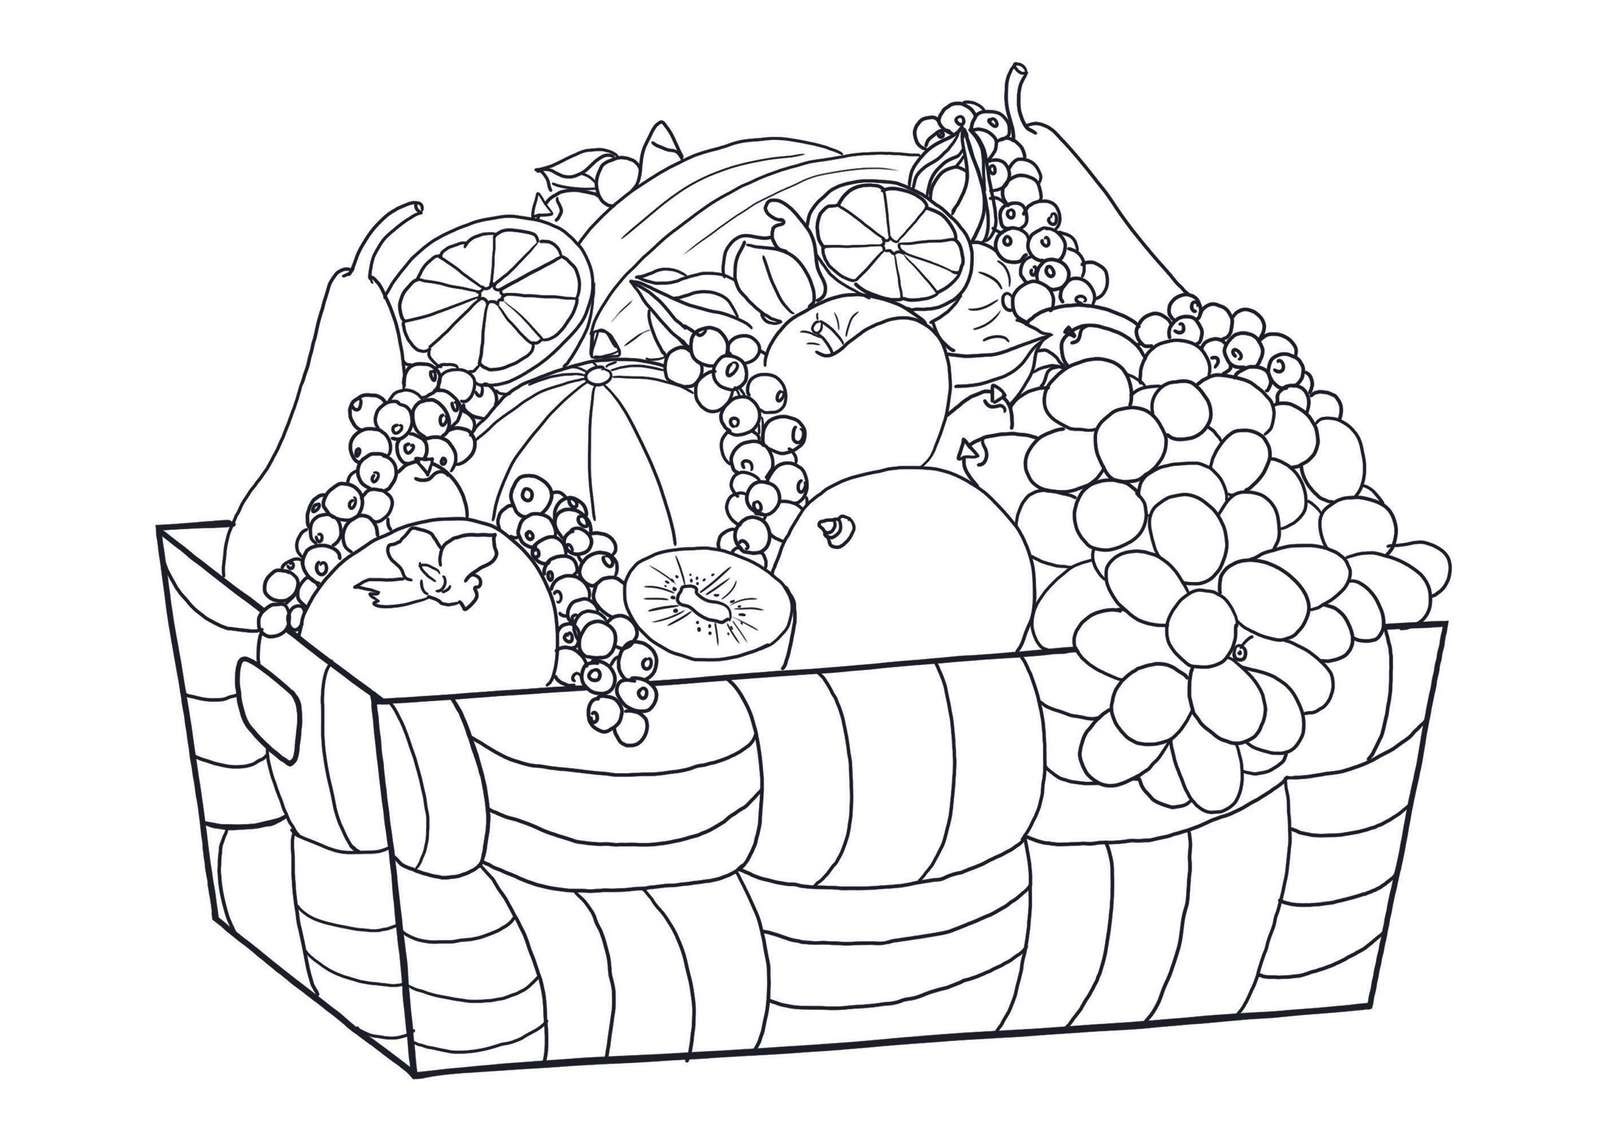 Buah-buahan puzzle online da foto